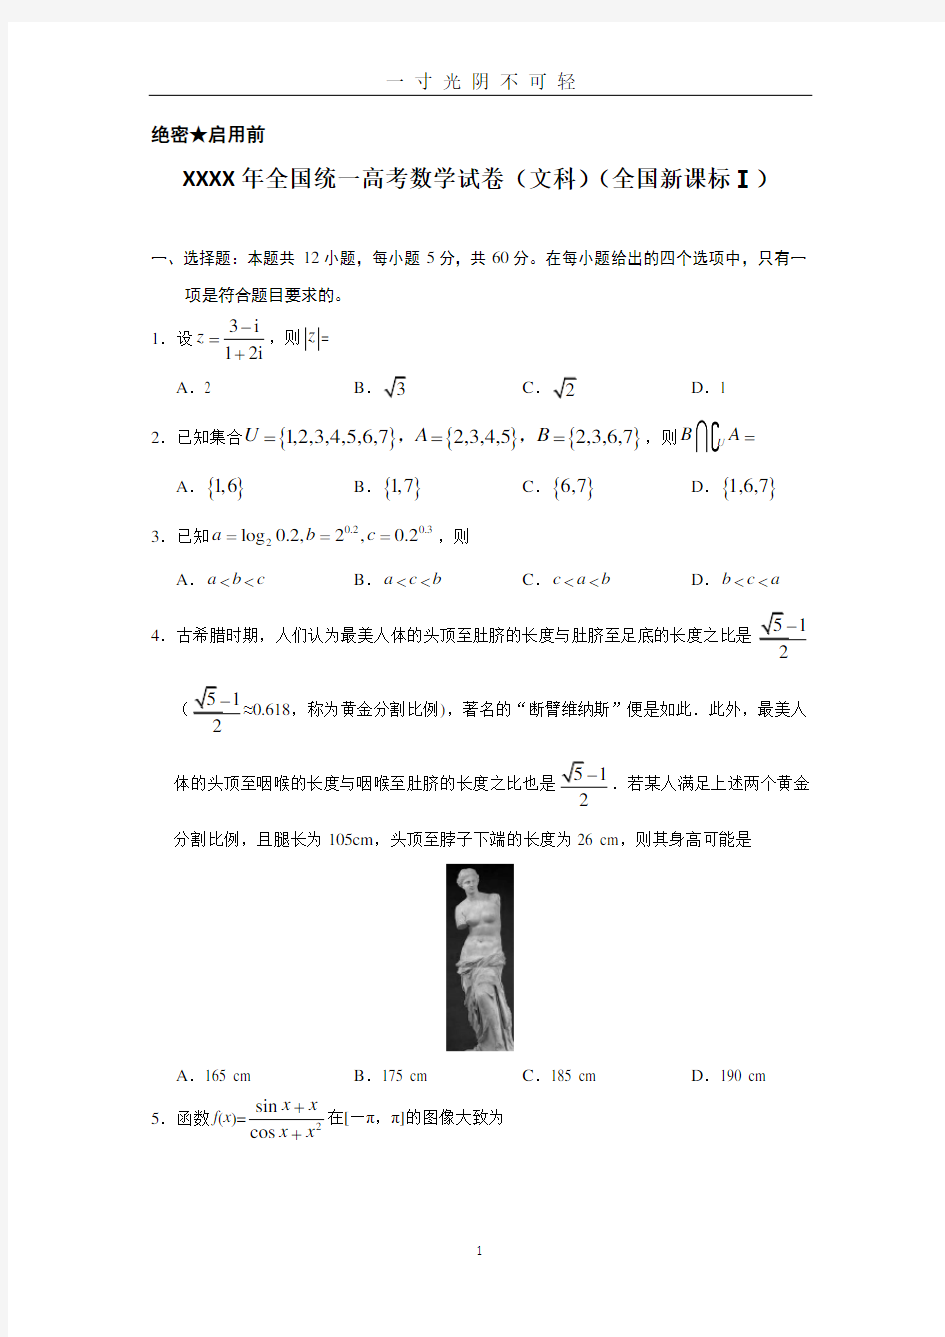 2019年全国统一高考数学试卷(文科)(全国一卷).doc